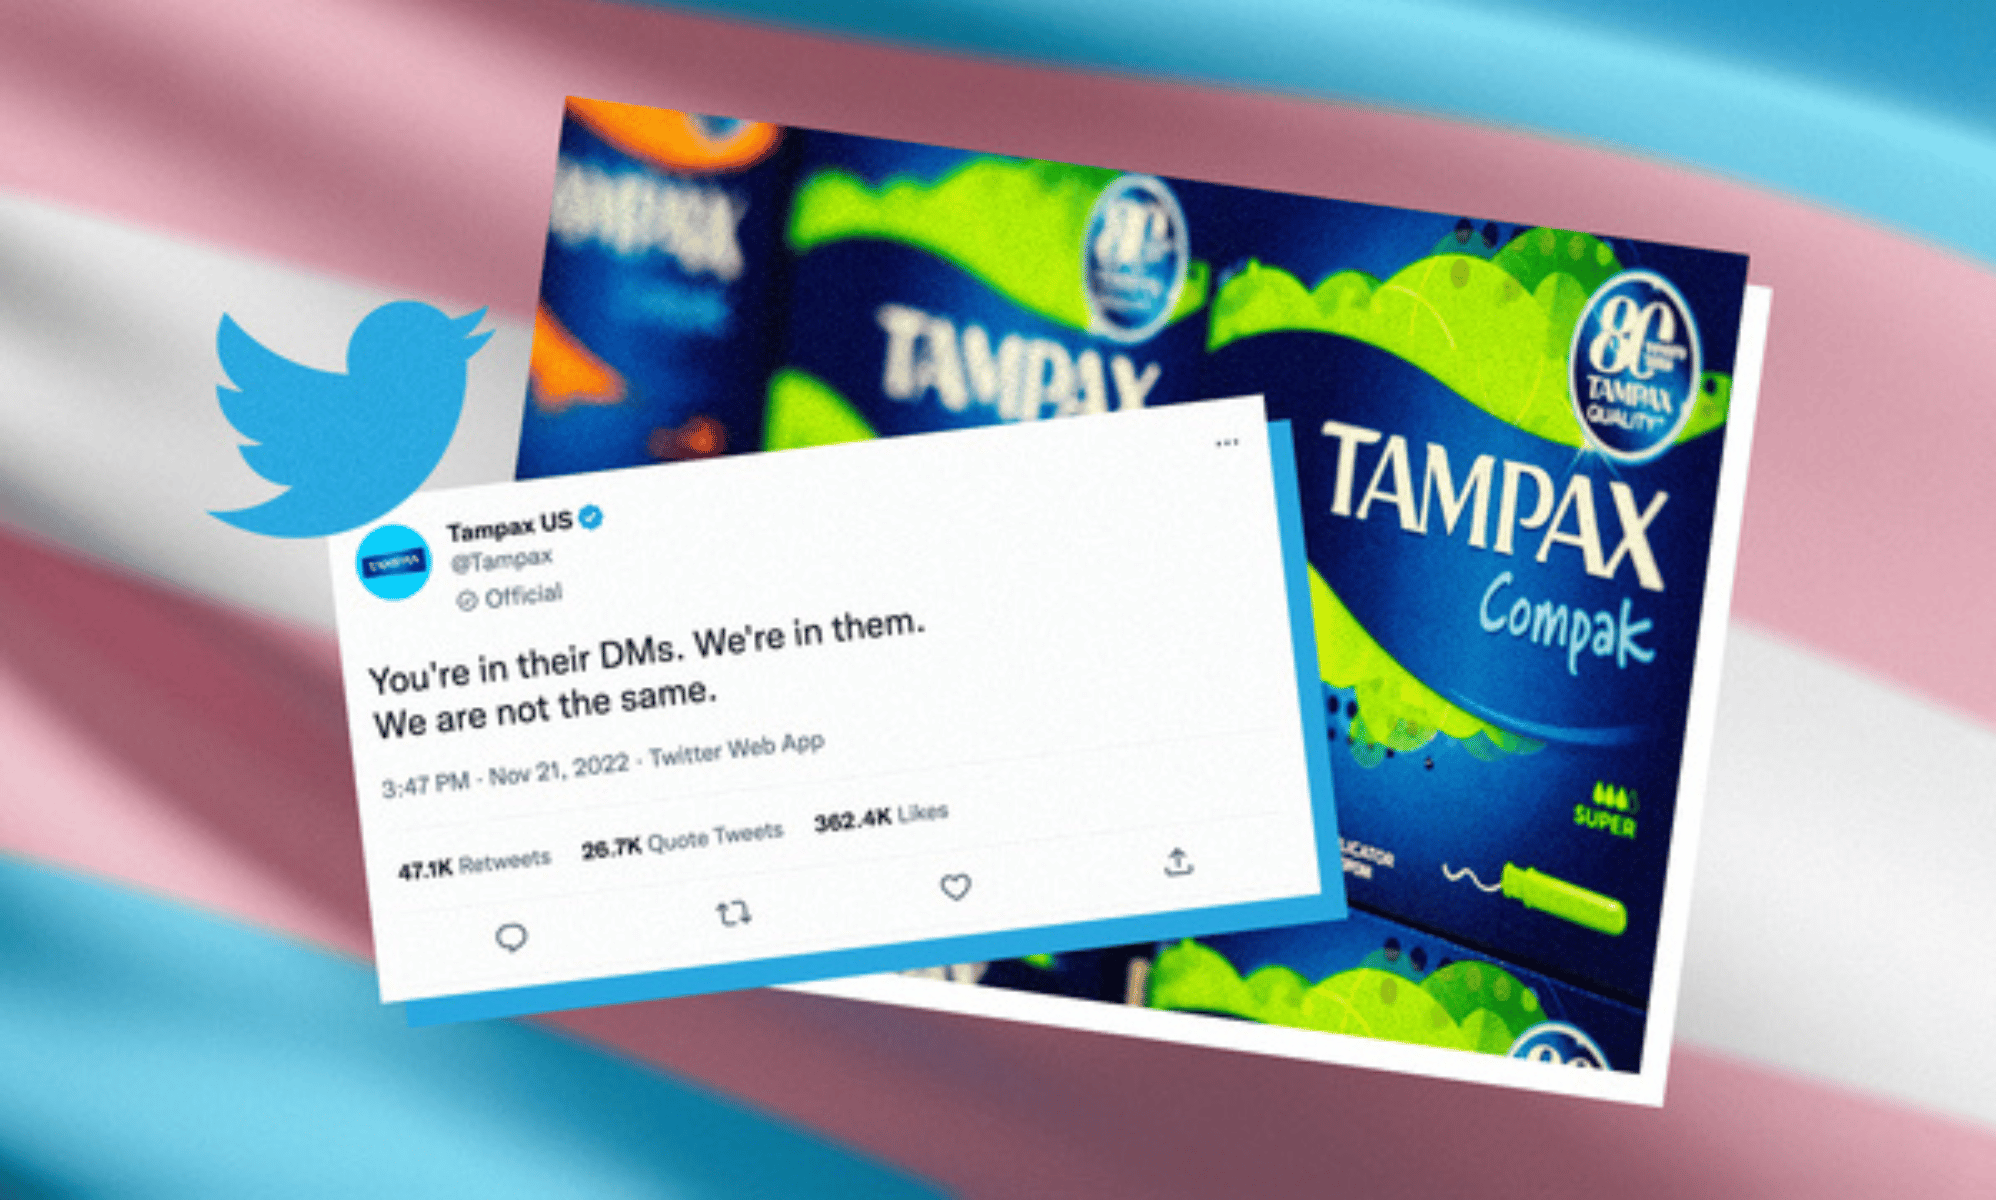 La empresa Tampax se enfrenta a las críticas en Twitter por sexualizar a las mujeres